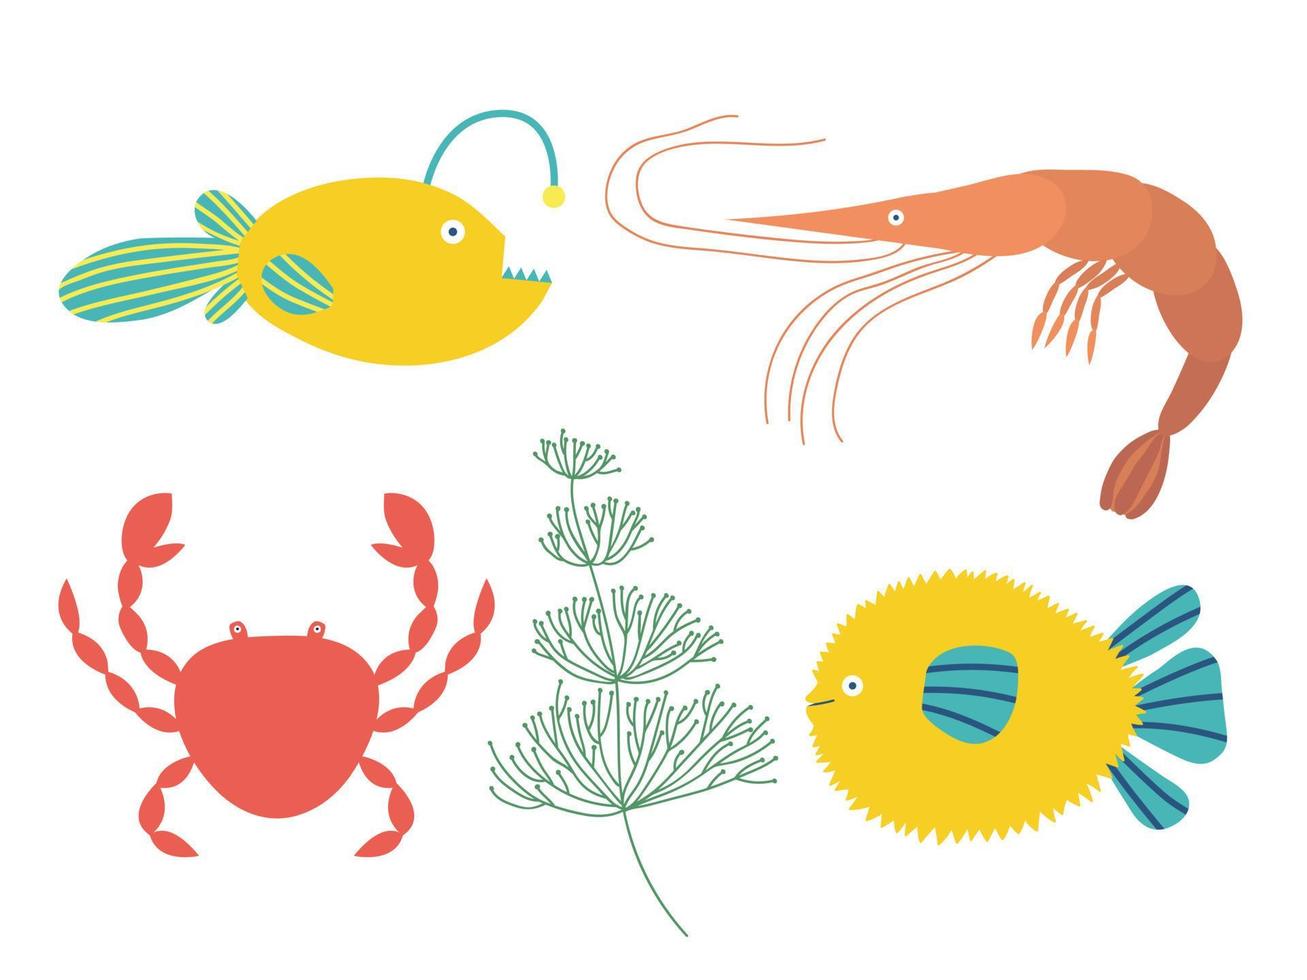 conjunto de animais marinhos. objetos coloridos da vida marinha dos desenhos animados. peixe bola, tamboril, caranguejo, camarão, algas, ervas marinhas. vetor clip-art isolado.